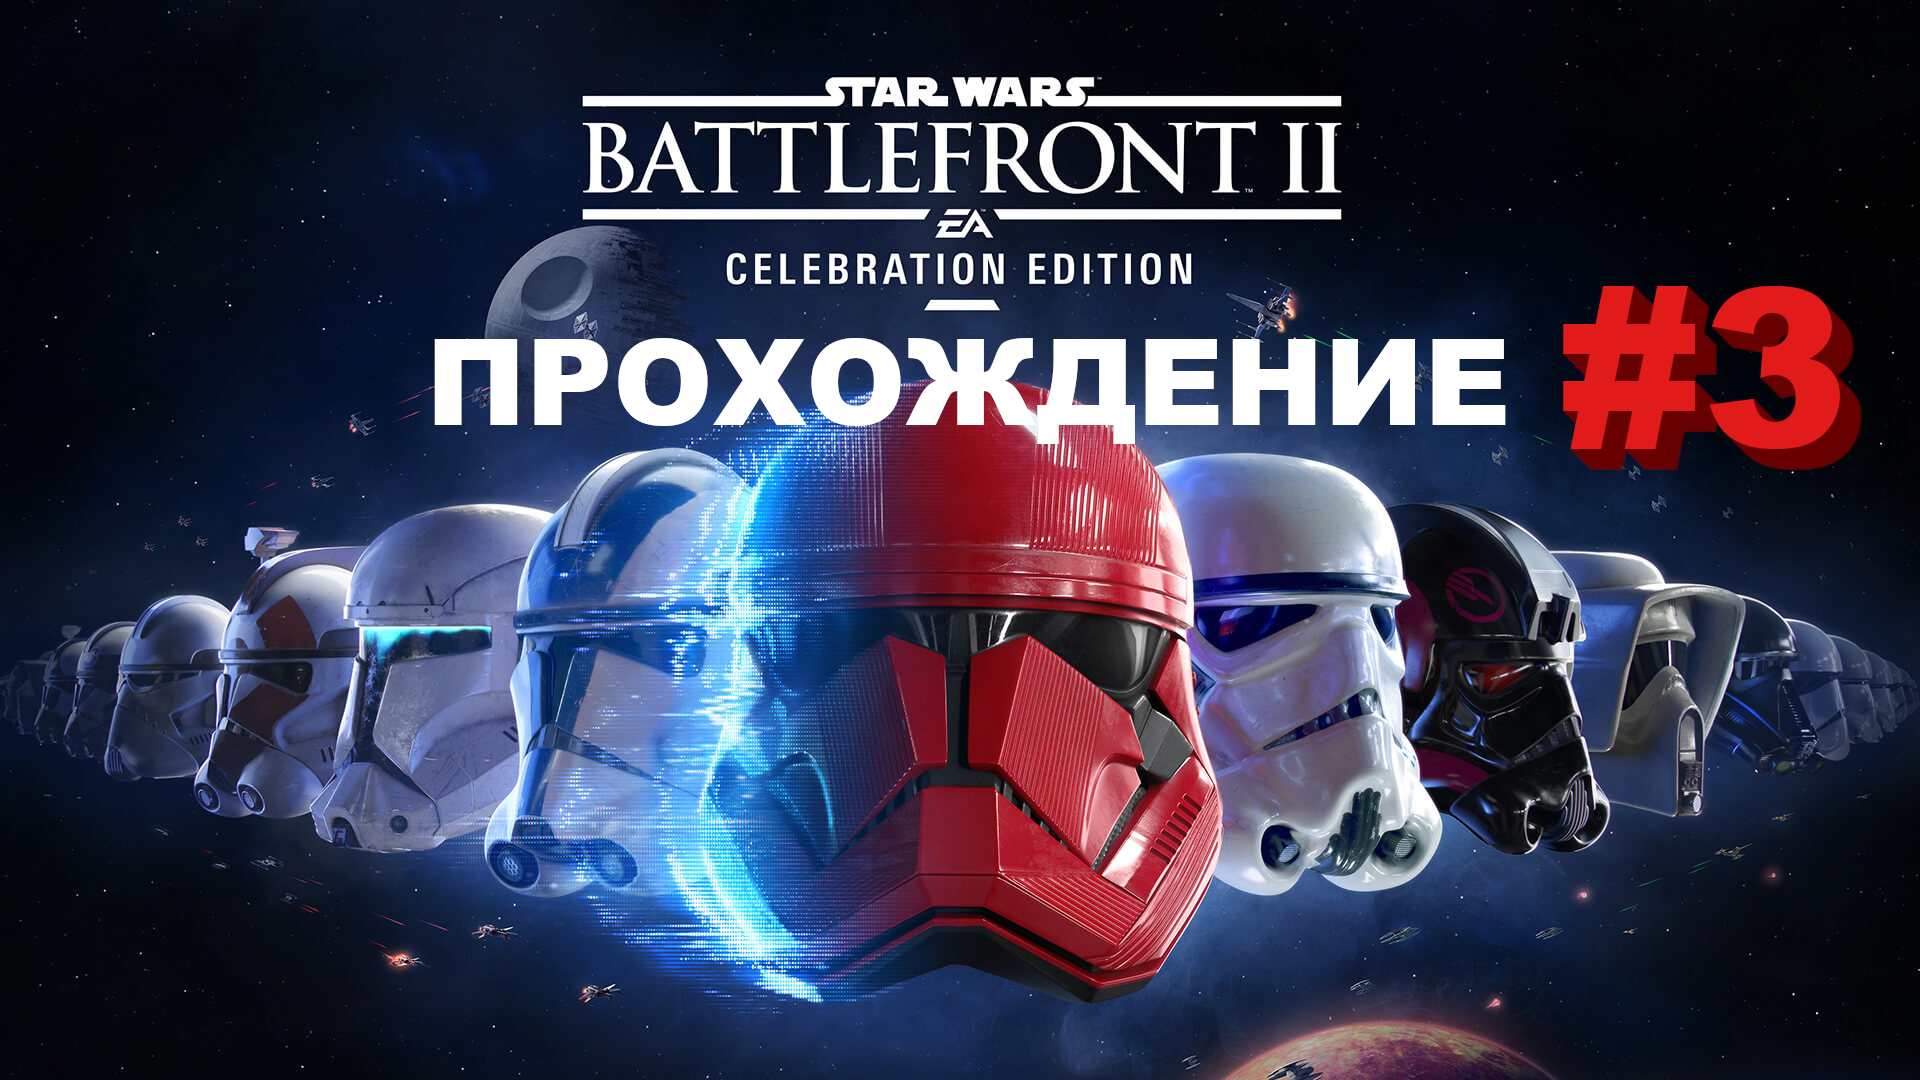 Star Wars Battlefront 2: Celebration edition